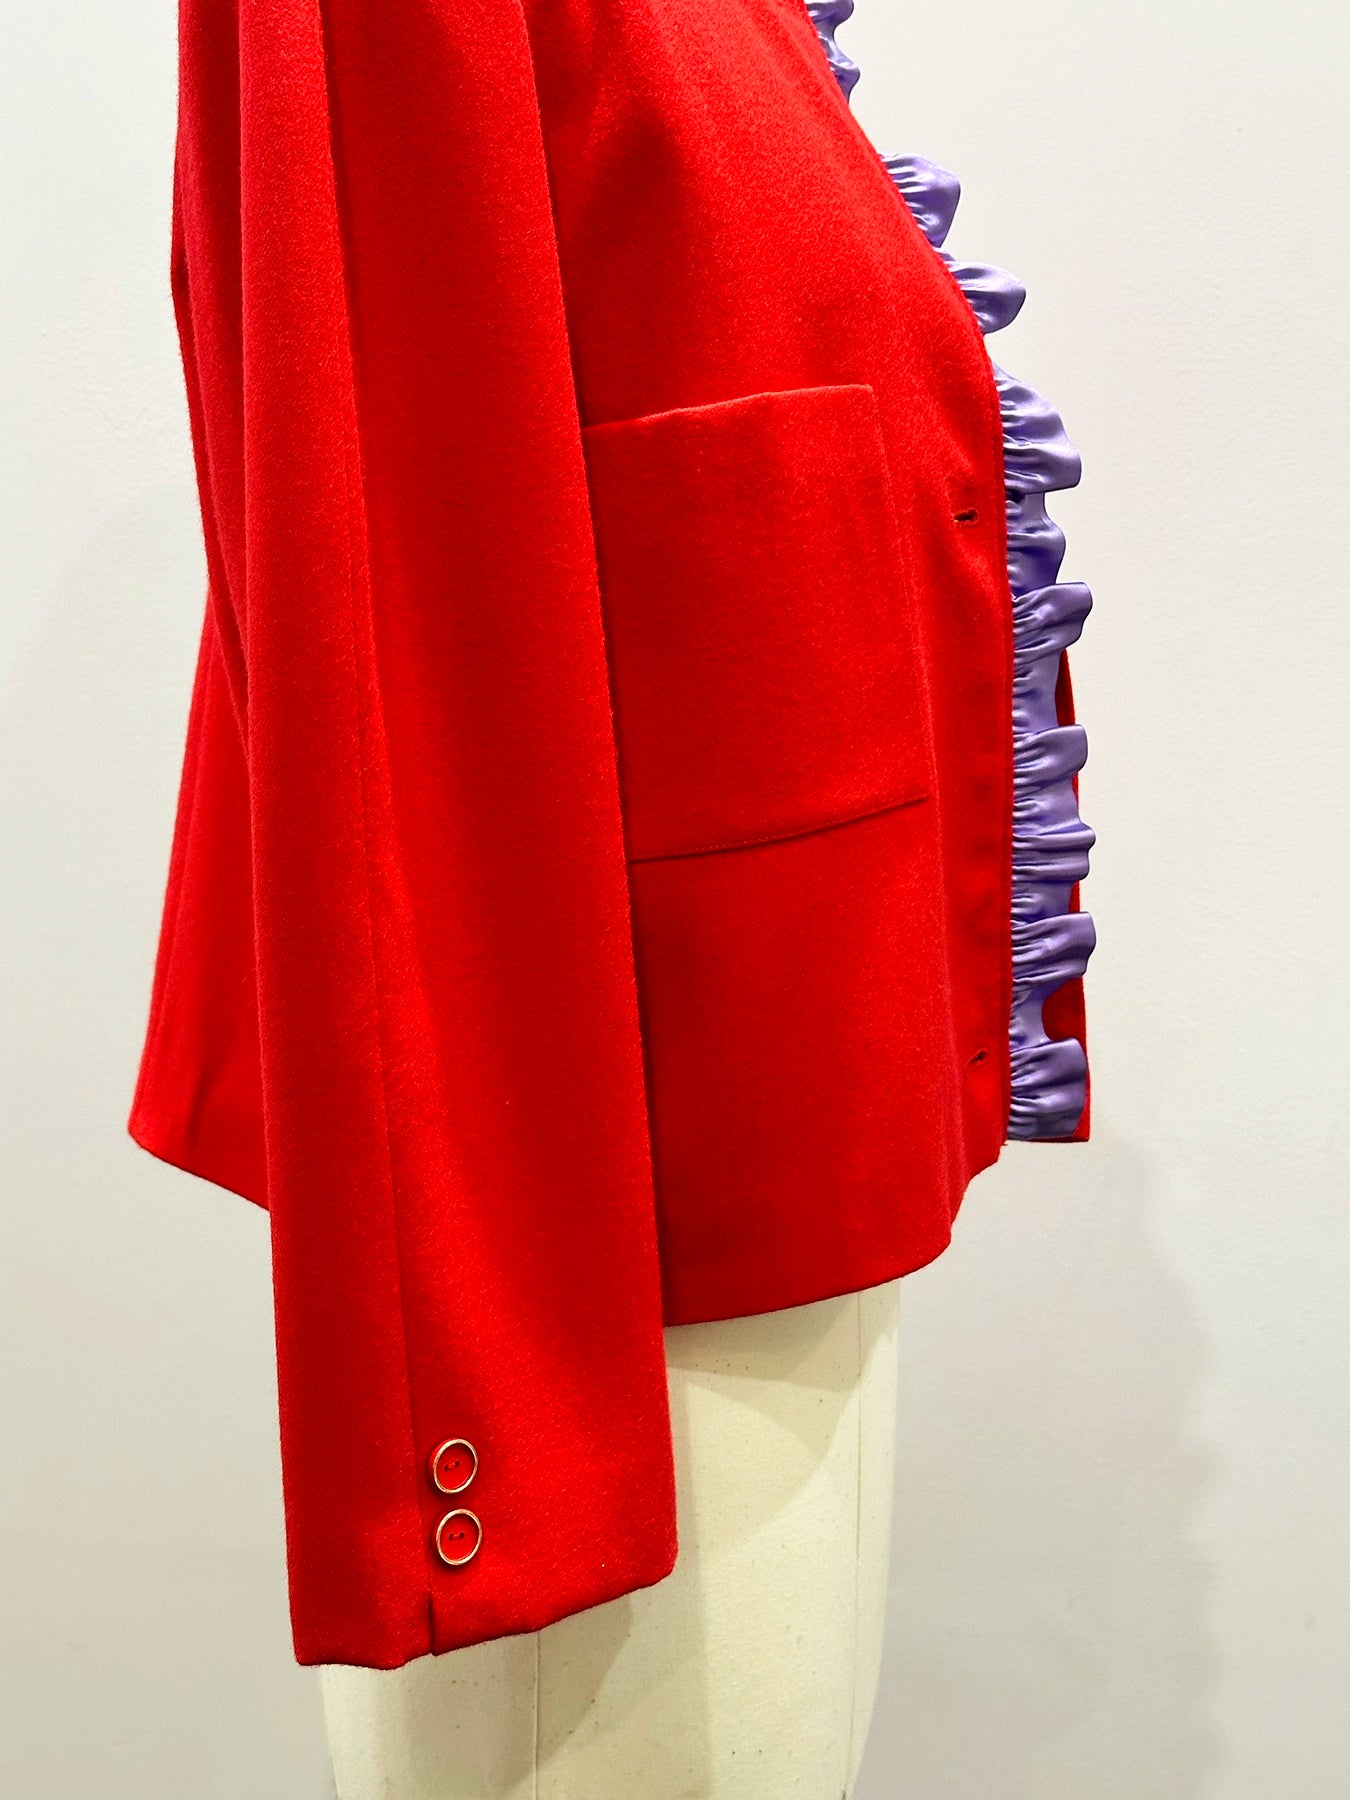 Load image into Gallery viewer, CC N°009 • La petite veste rouge
